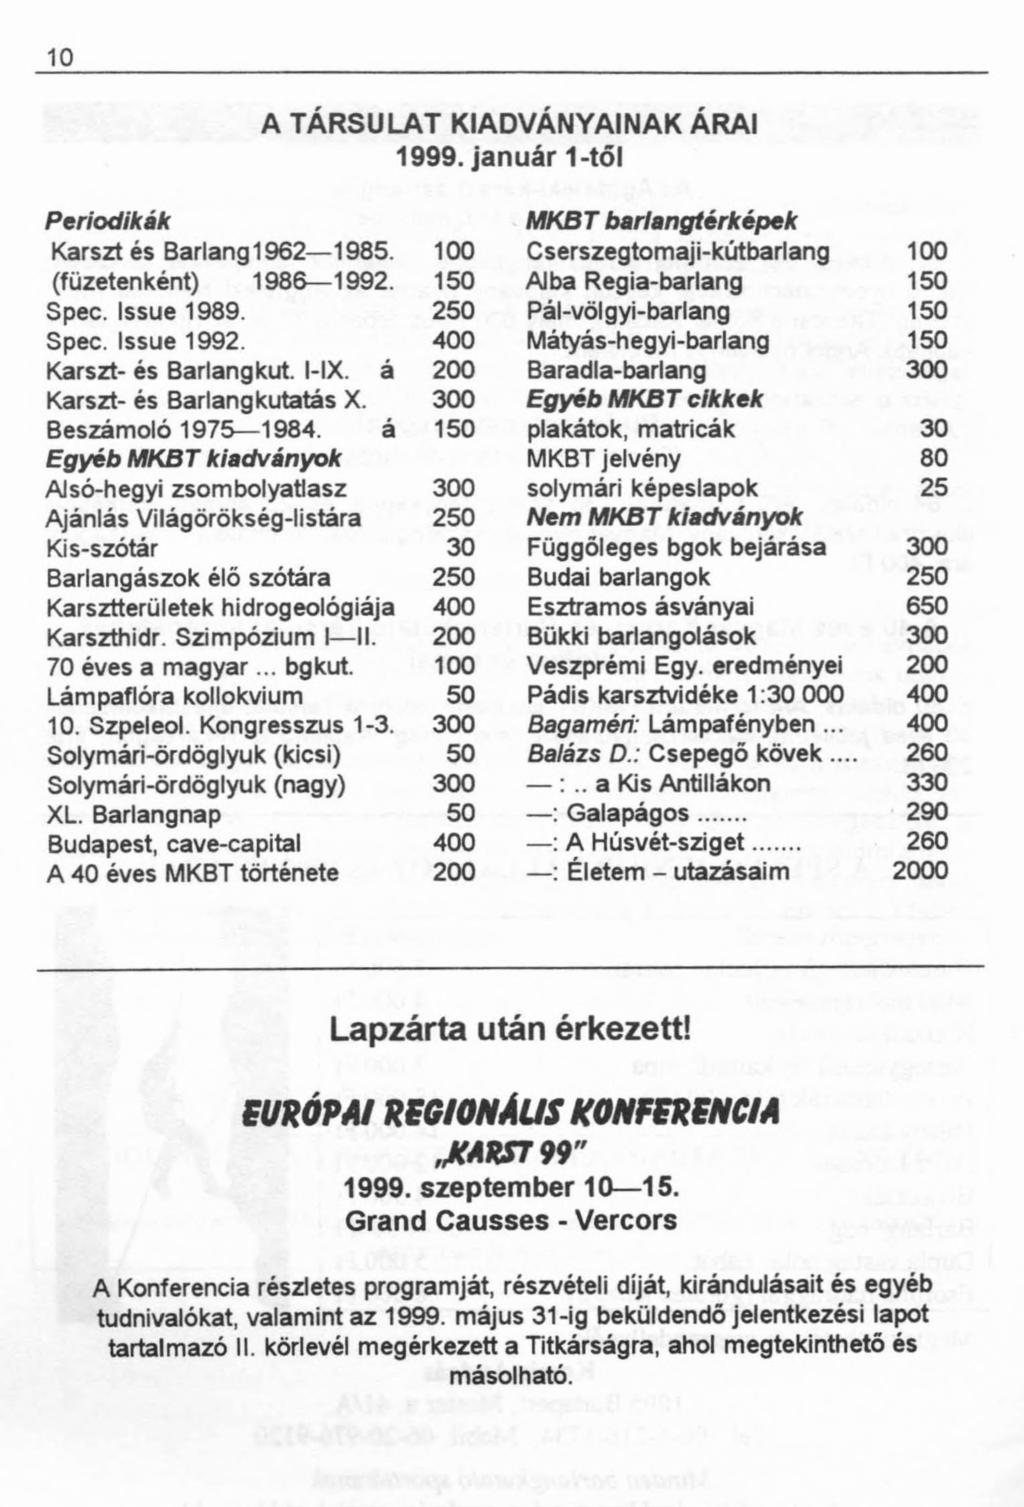 10 A TÁRSULAT KIADVÁNYAINAK ÁRAI 1999. január 1-től Periodikák barlangtérképek Karszt és Barlang 1962 1985. 100 Cserszegtomaji-kútbarlang 100 (füzetenként) 1986 1992. 150 Álba Regia-barlang 150 Spec.